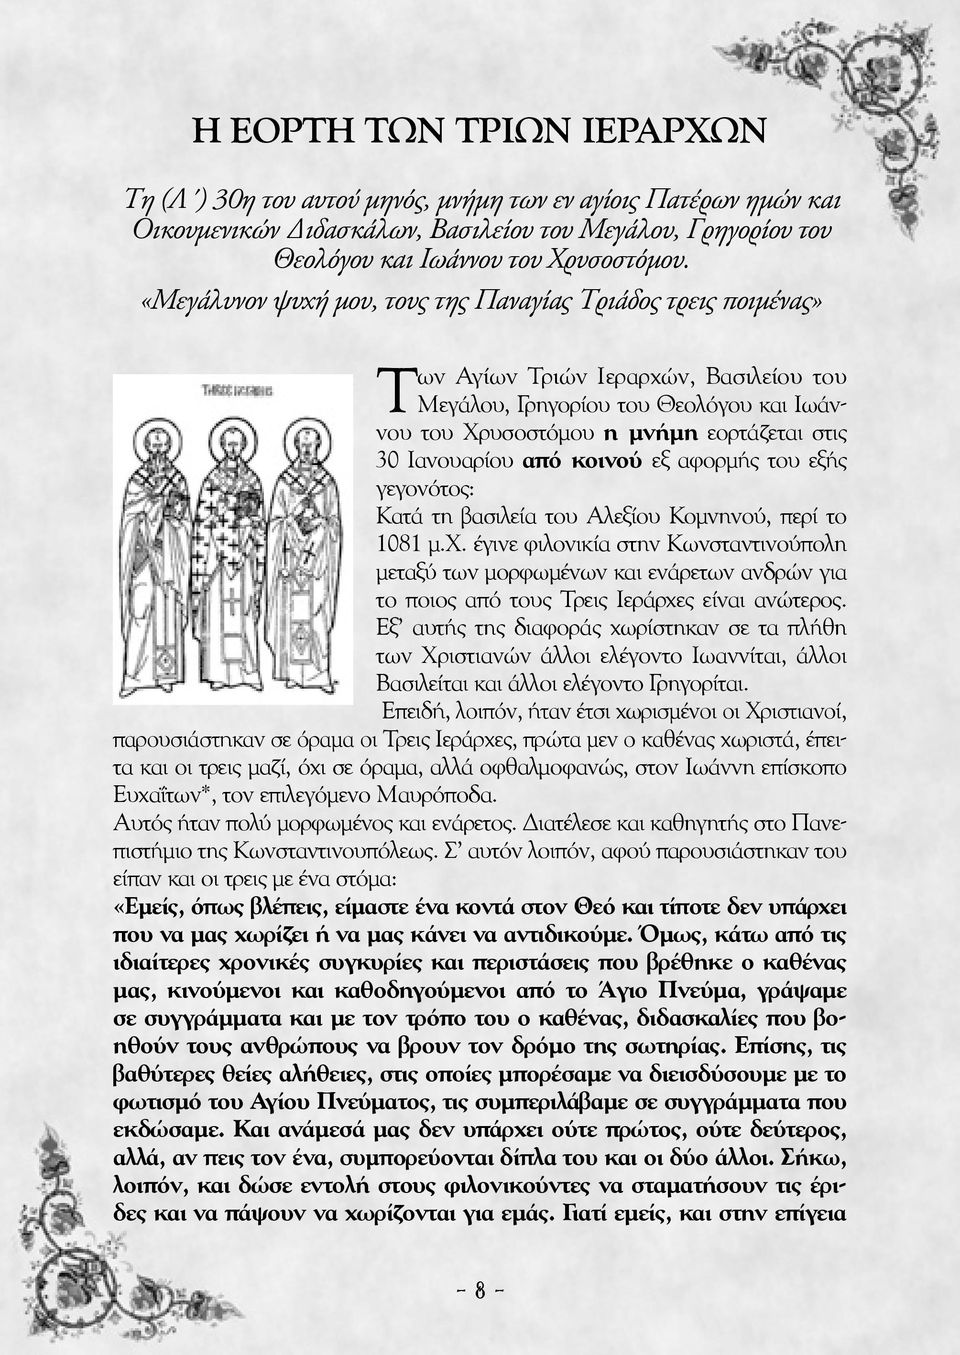 Ιανουαρίου από κοινού εξ αφορμής του εξής γεγονότος: Κατά τη βασιλεία του Αλεξίου Κομνηνού, περί το 1081 μ.χ.